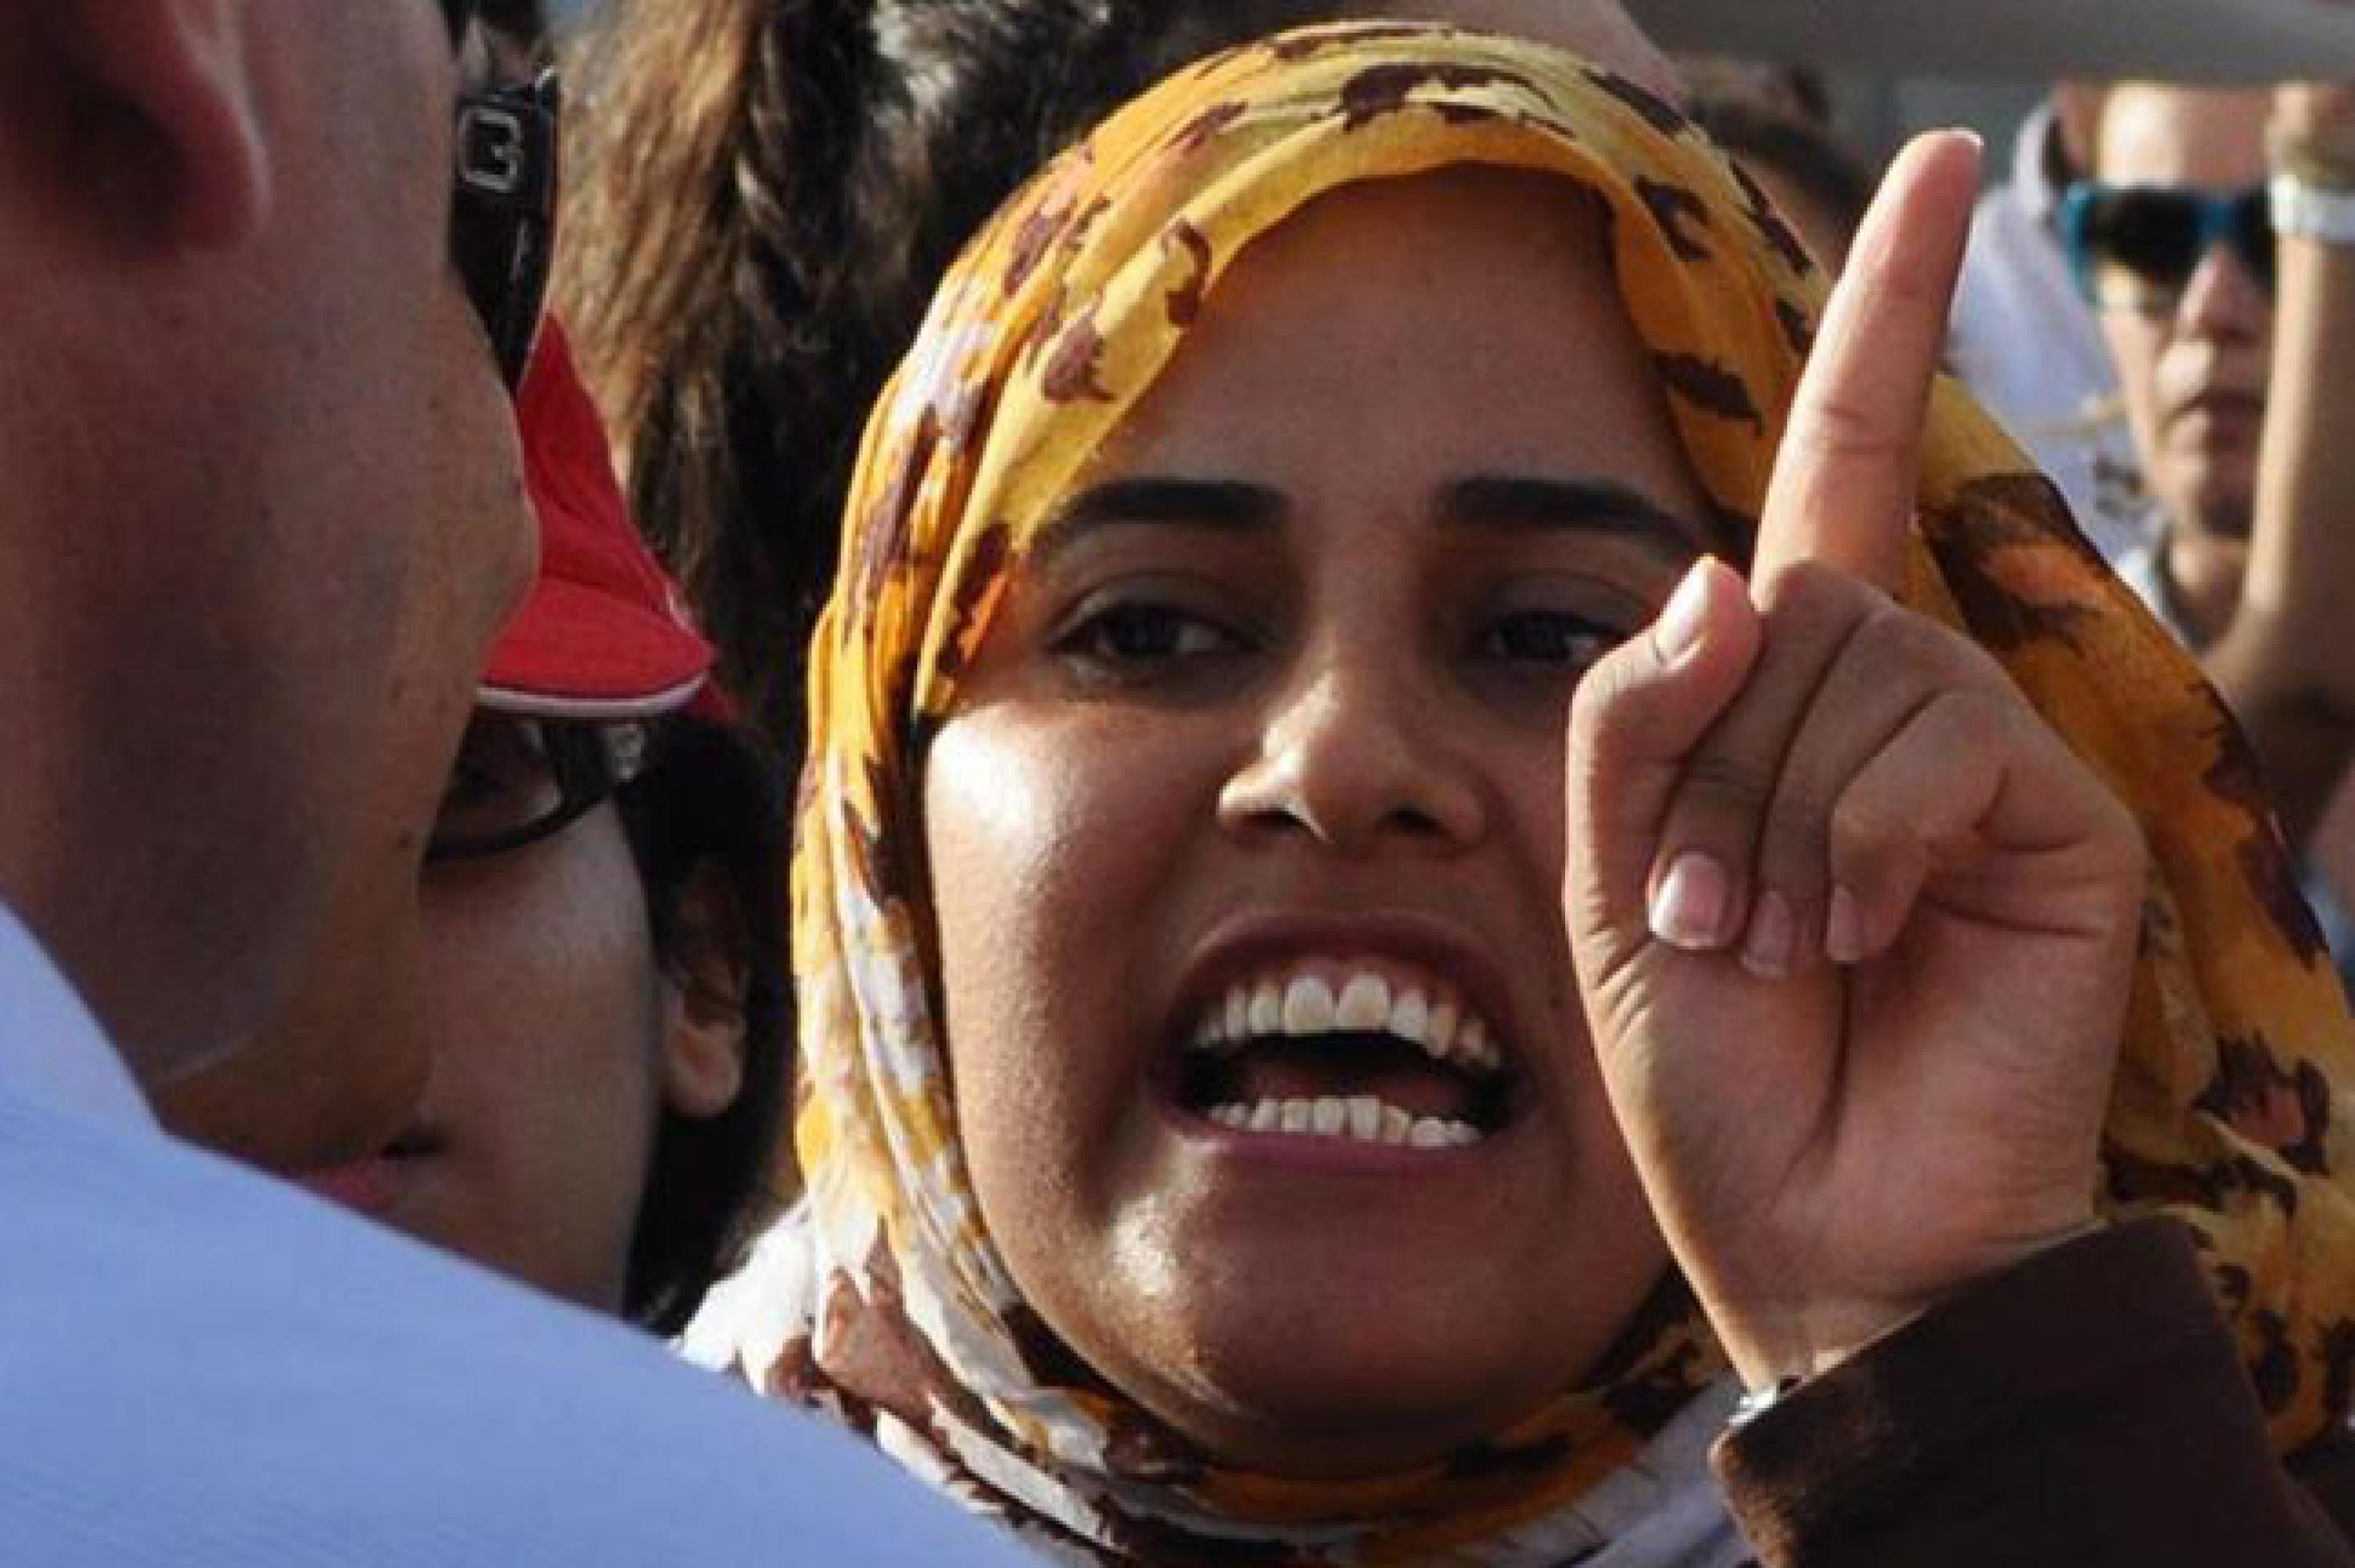 Frau mit gelb-braun gemustertem Kopftuch, die mit erhobenem Zeigefinger auf einer Demonstration in Tunis einem Polizisten etwas zuruft.